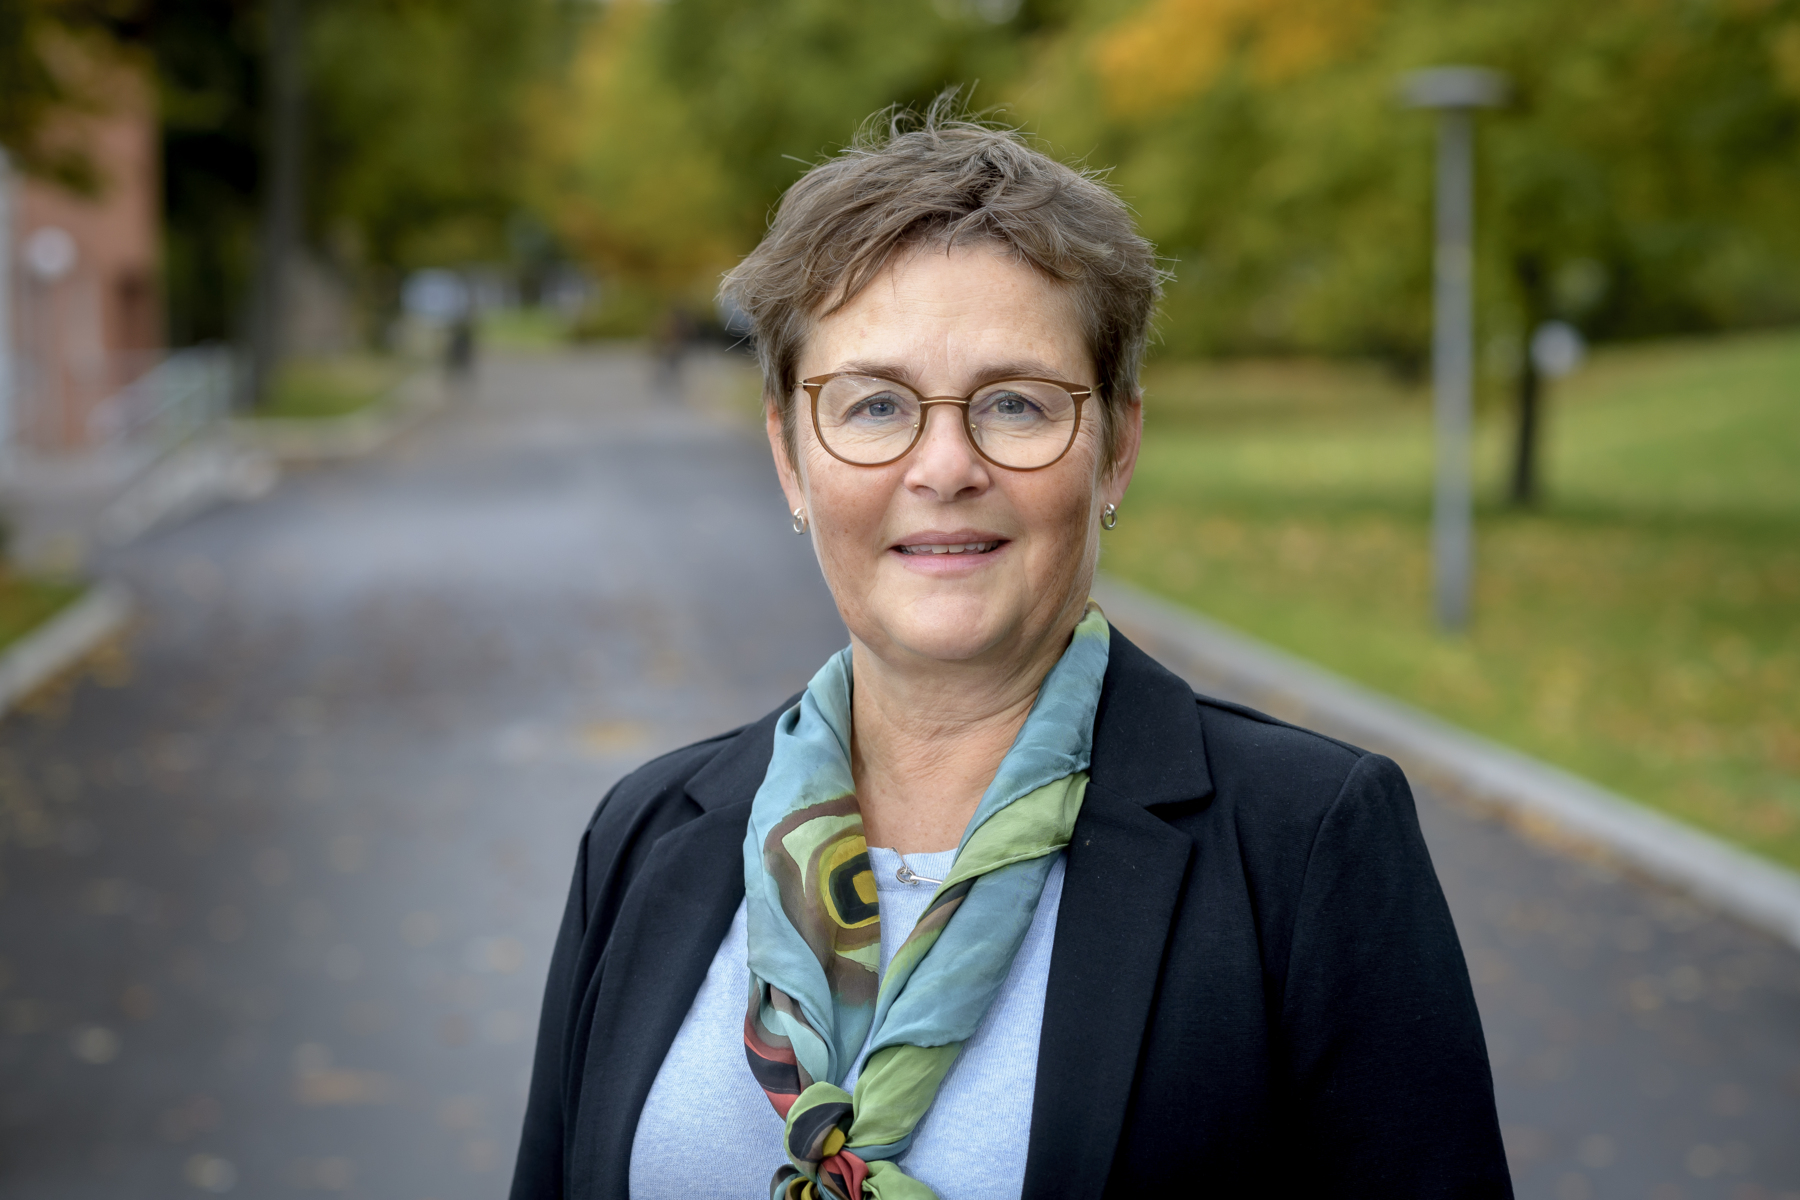 Annika Olsson, dean of LTH. Photo.